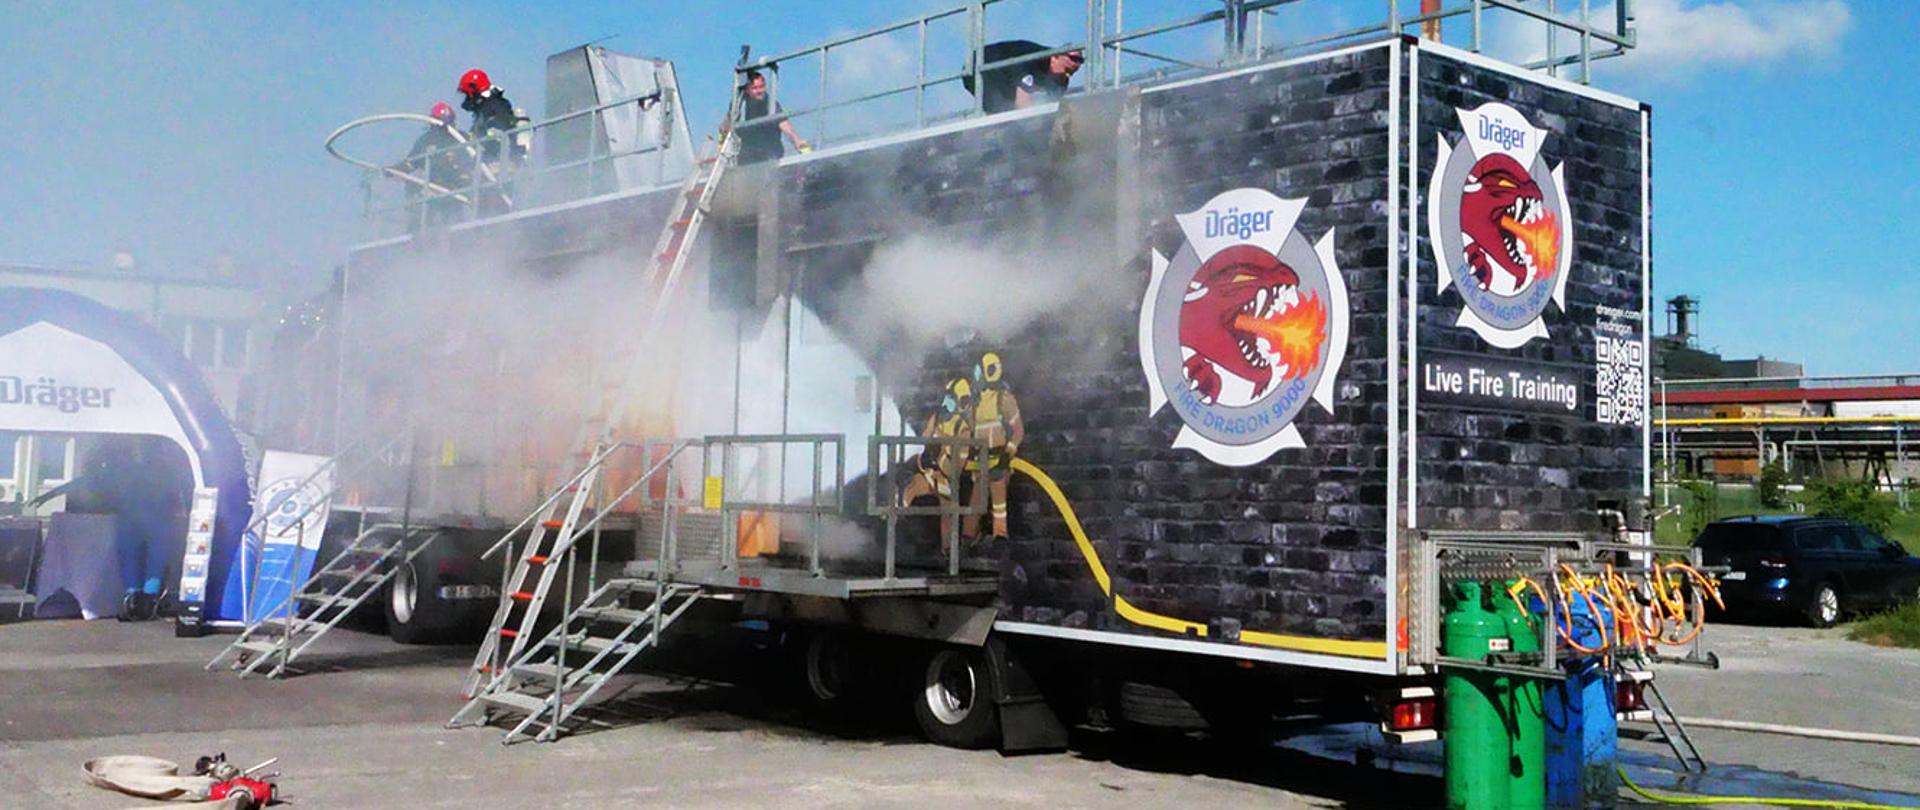 Na zdjęciu widoczny czarny kontener z logo ziejącej ogniem głowy smoka, namalowanymi strażakami gaszącymi pożar, z napisem Fire Dragon 9000 i białym napisem Live Fire Training. Na dachu zabezpieczonym stalową barierką widać dwóch mężczyzn w czarnych koszulkach, za nimi w głębi dwóch strażaków w czarnych ubraniach bojowych i czerwonych hełmach na głowie, u jednego z nich na plecach widoczna butla. Nad dachem kontenera widoczny komin z wydobywającym się białym dymem, przed kontenerem metalowe podesty ze schodami i metalowa drabina oparta o dach. Przed kontenerem widoczne stalowe zielone i niebieskie zbiorniki stojące na wilgotnym betonowym placu. Z lewej strony zdjęcia rozwinięty jasny, popielaty wąż gaśniczy, dalej biało-niebieski pneumatyczny namiot. Z prawej strony widoczny tył i prawy bok samochodu typu kombi i tereny zielone, dalej elementy infrastruktury zakładu z zabudowaniami.